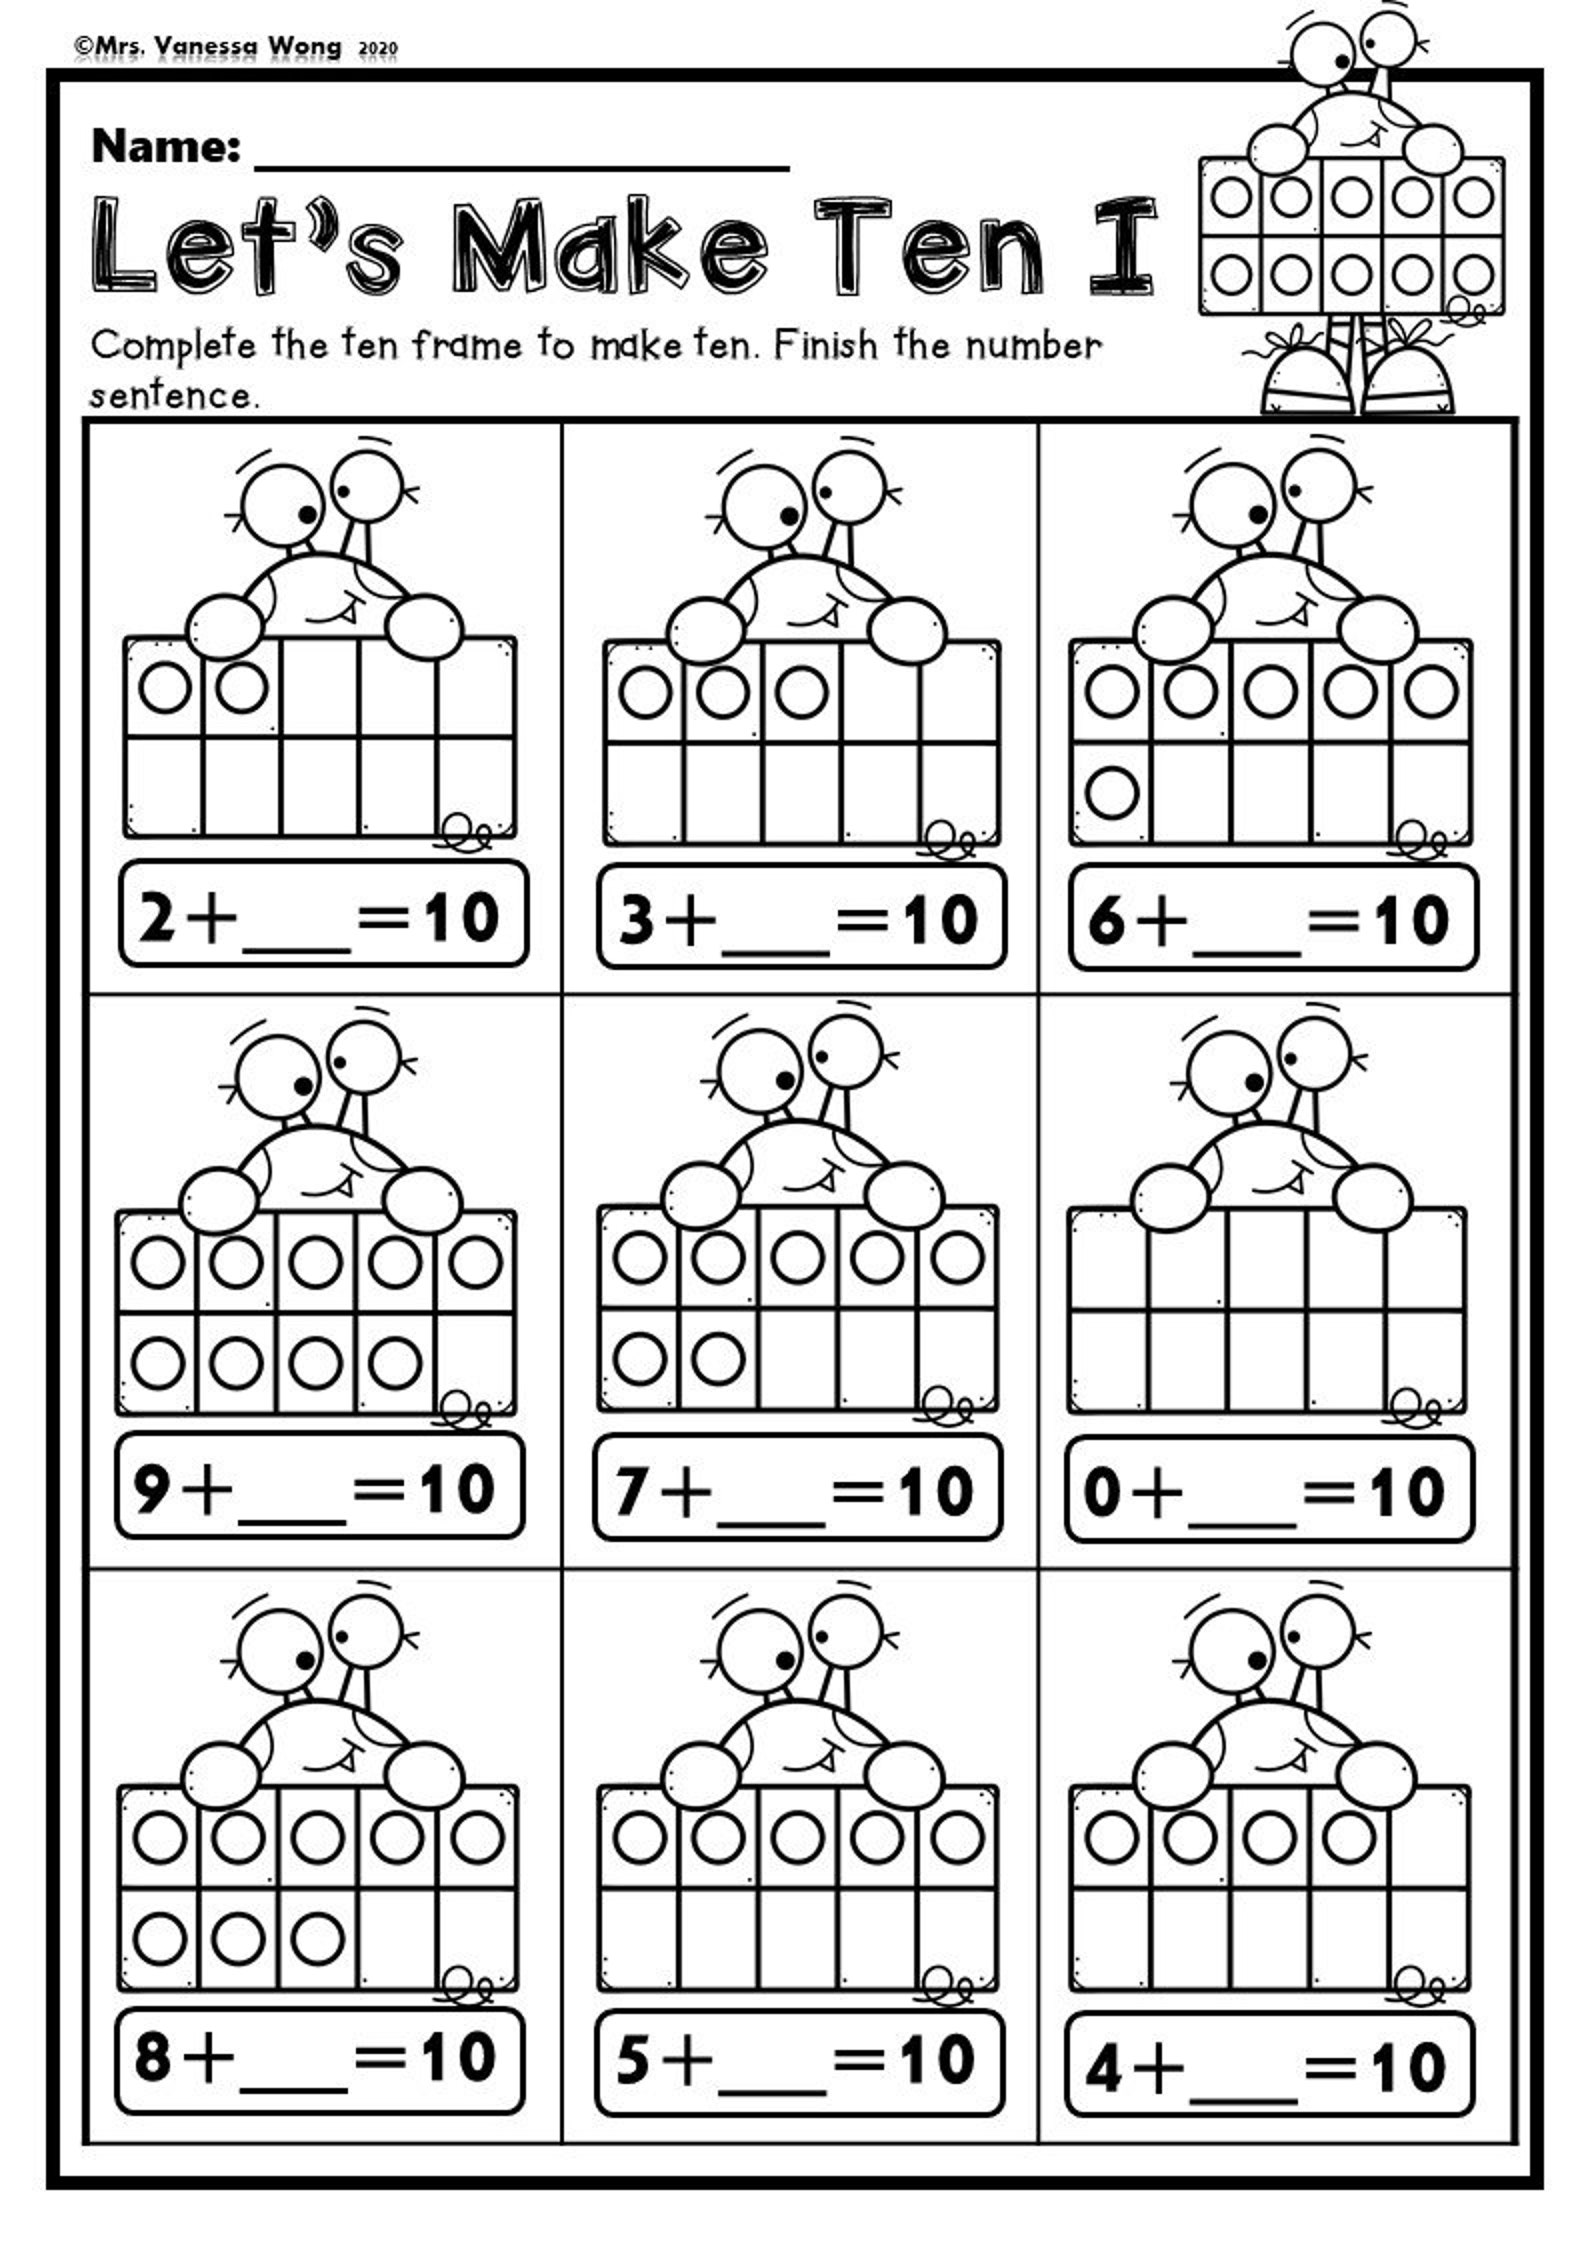 kindergarten-math-worksheets-ten-frame-addition-instant-download-etsy